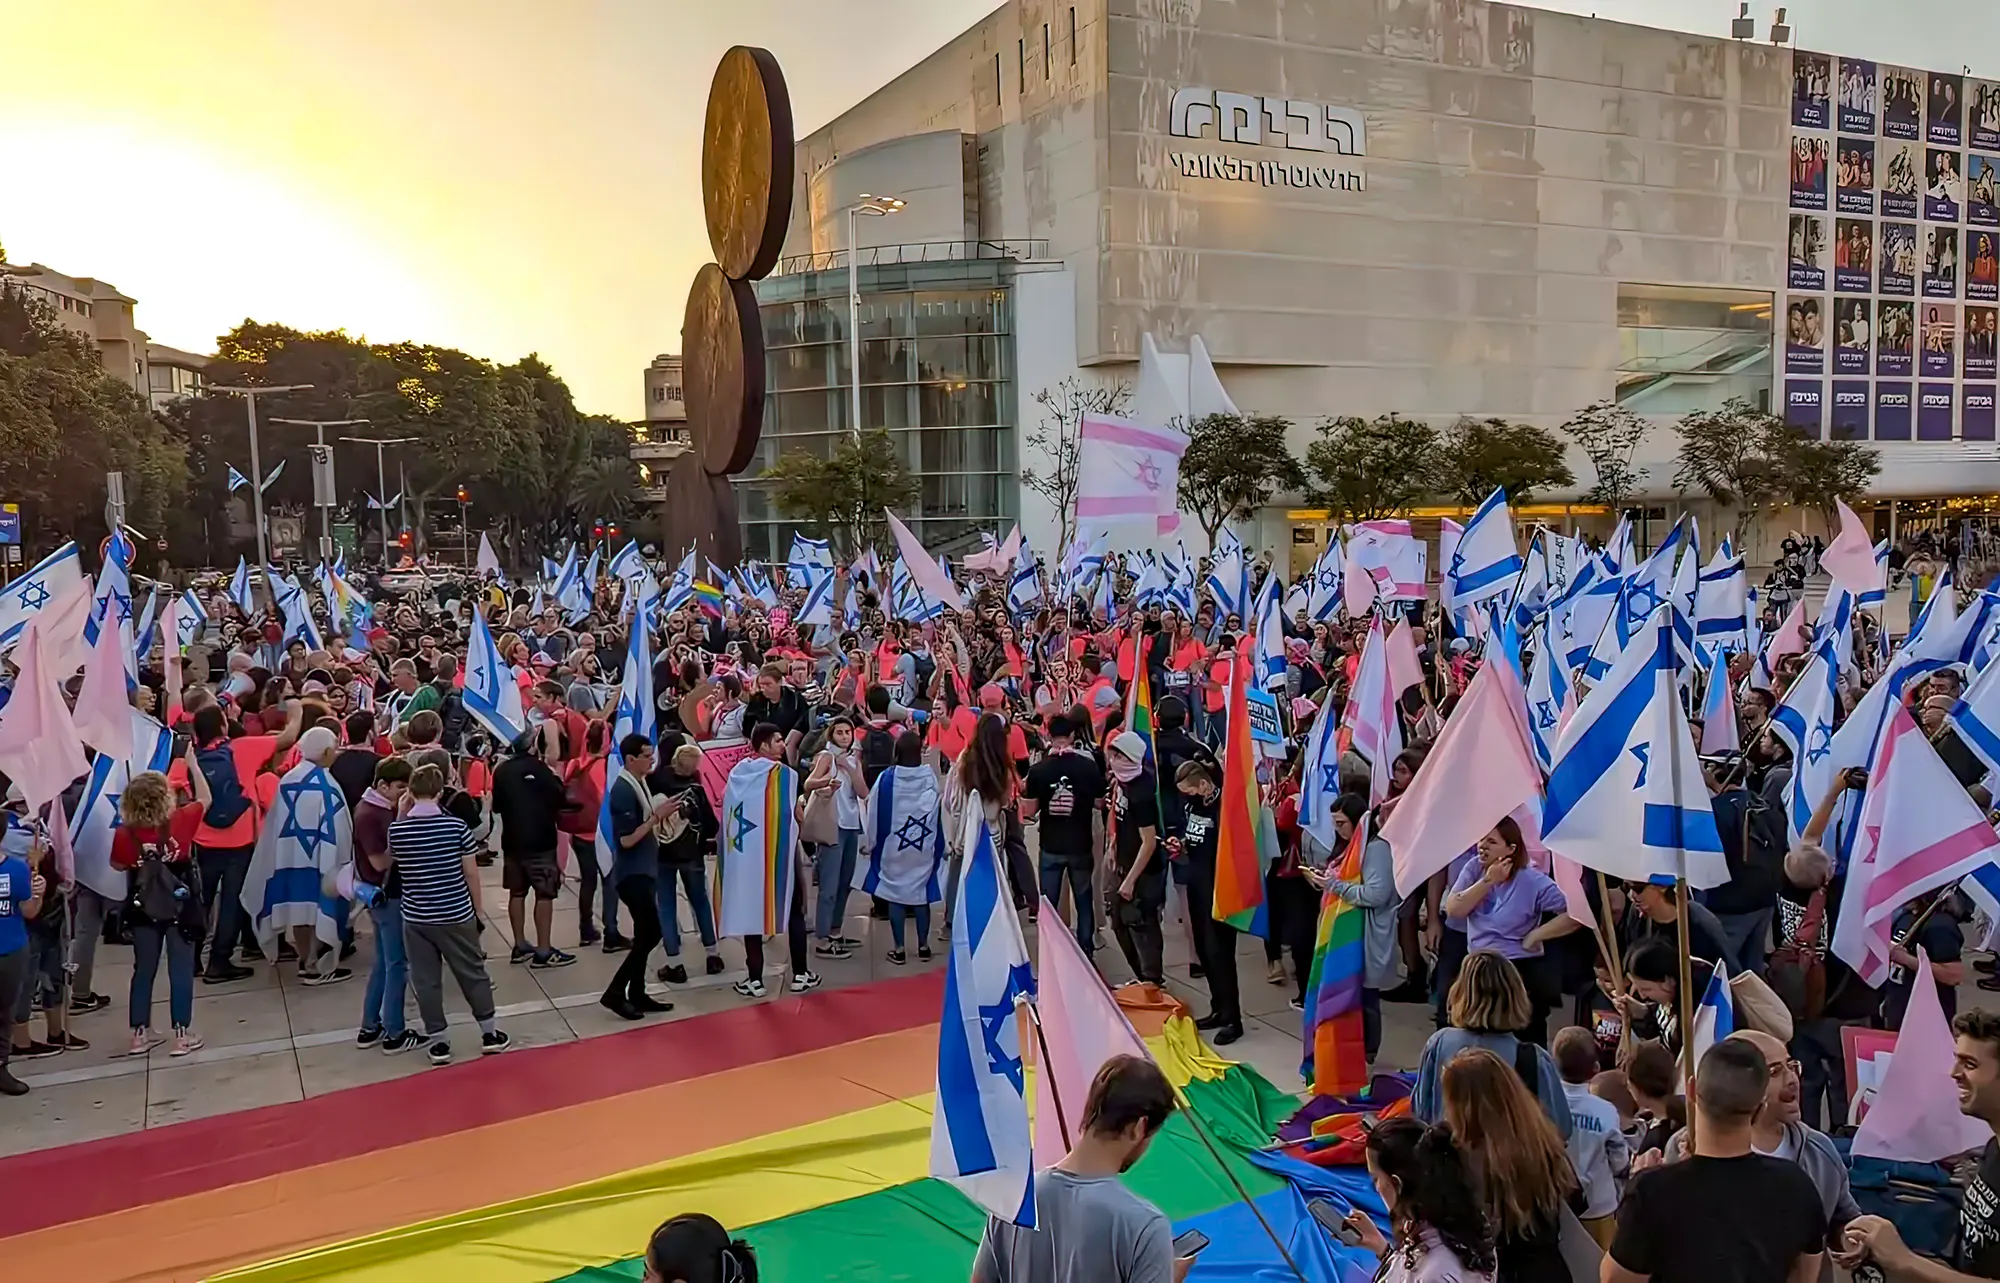 La Reforma Judicial no afecta la economía de Israel: los disturbios sí